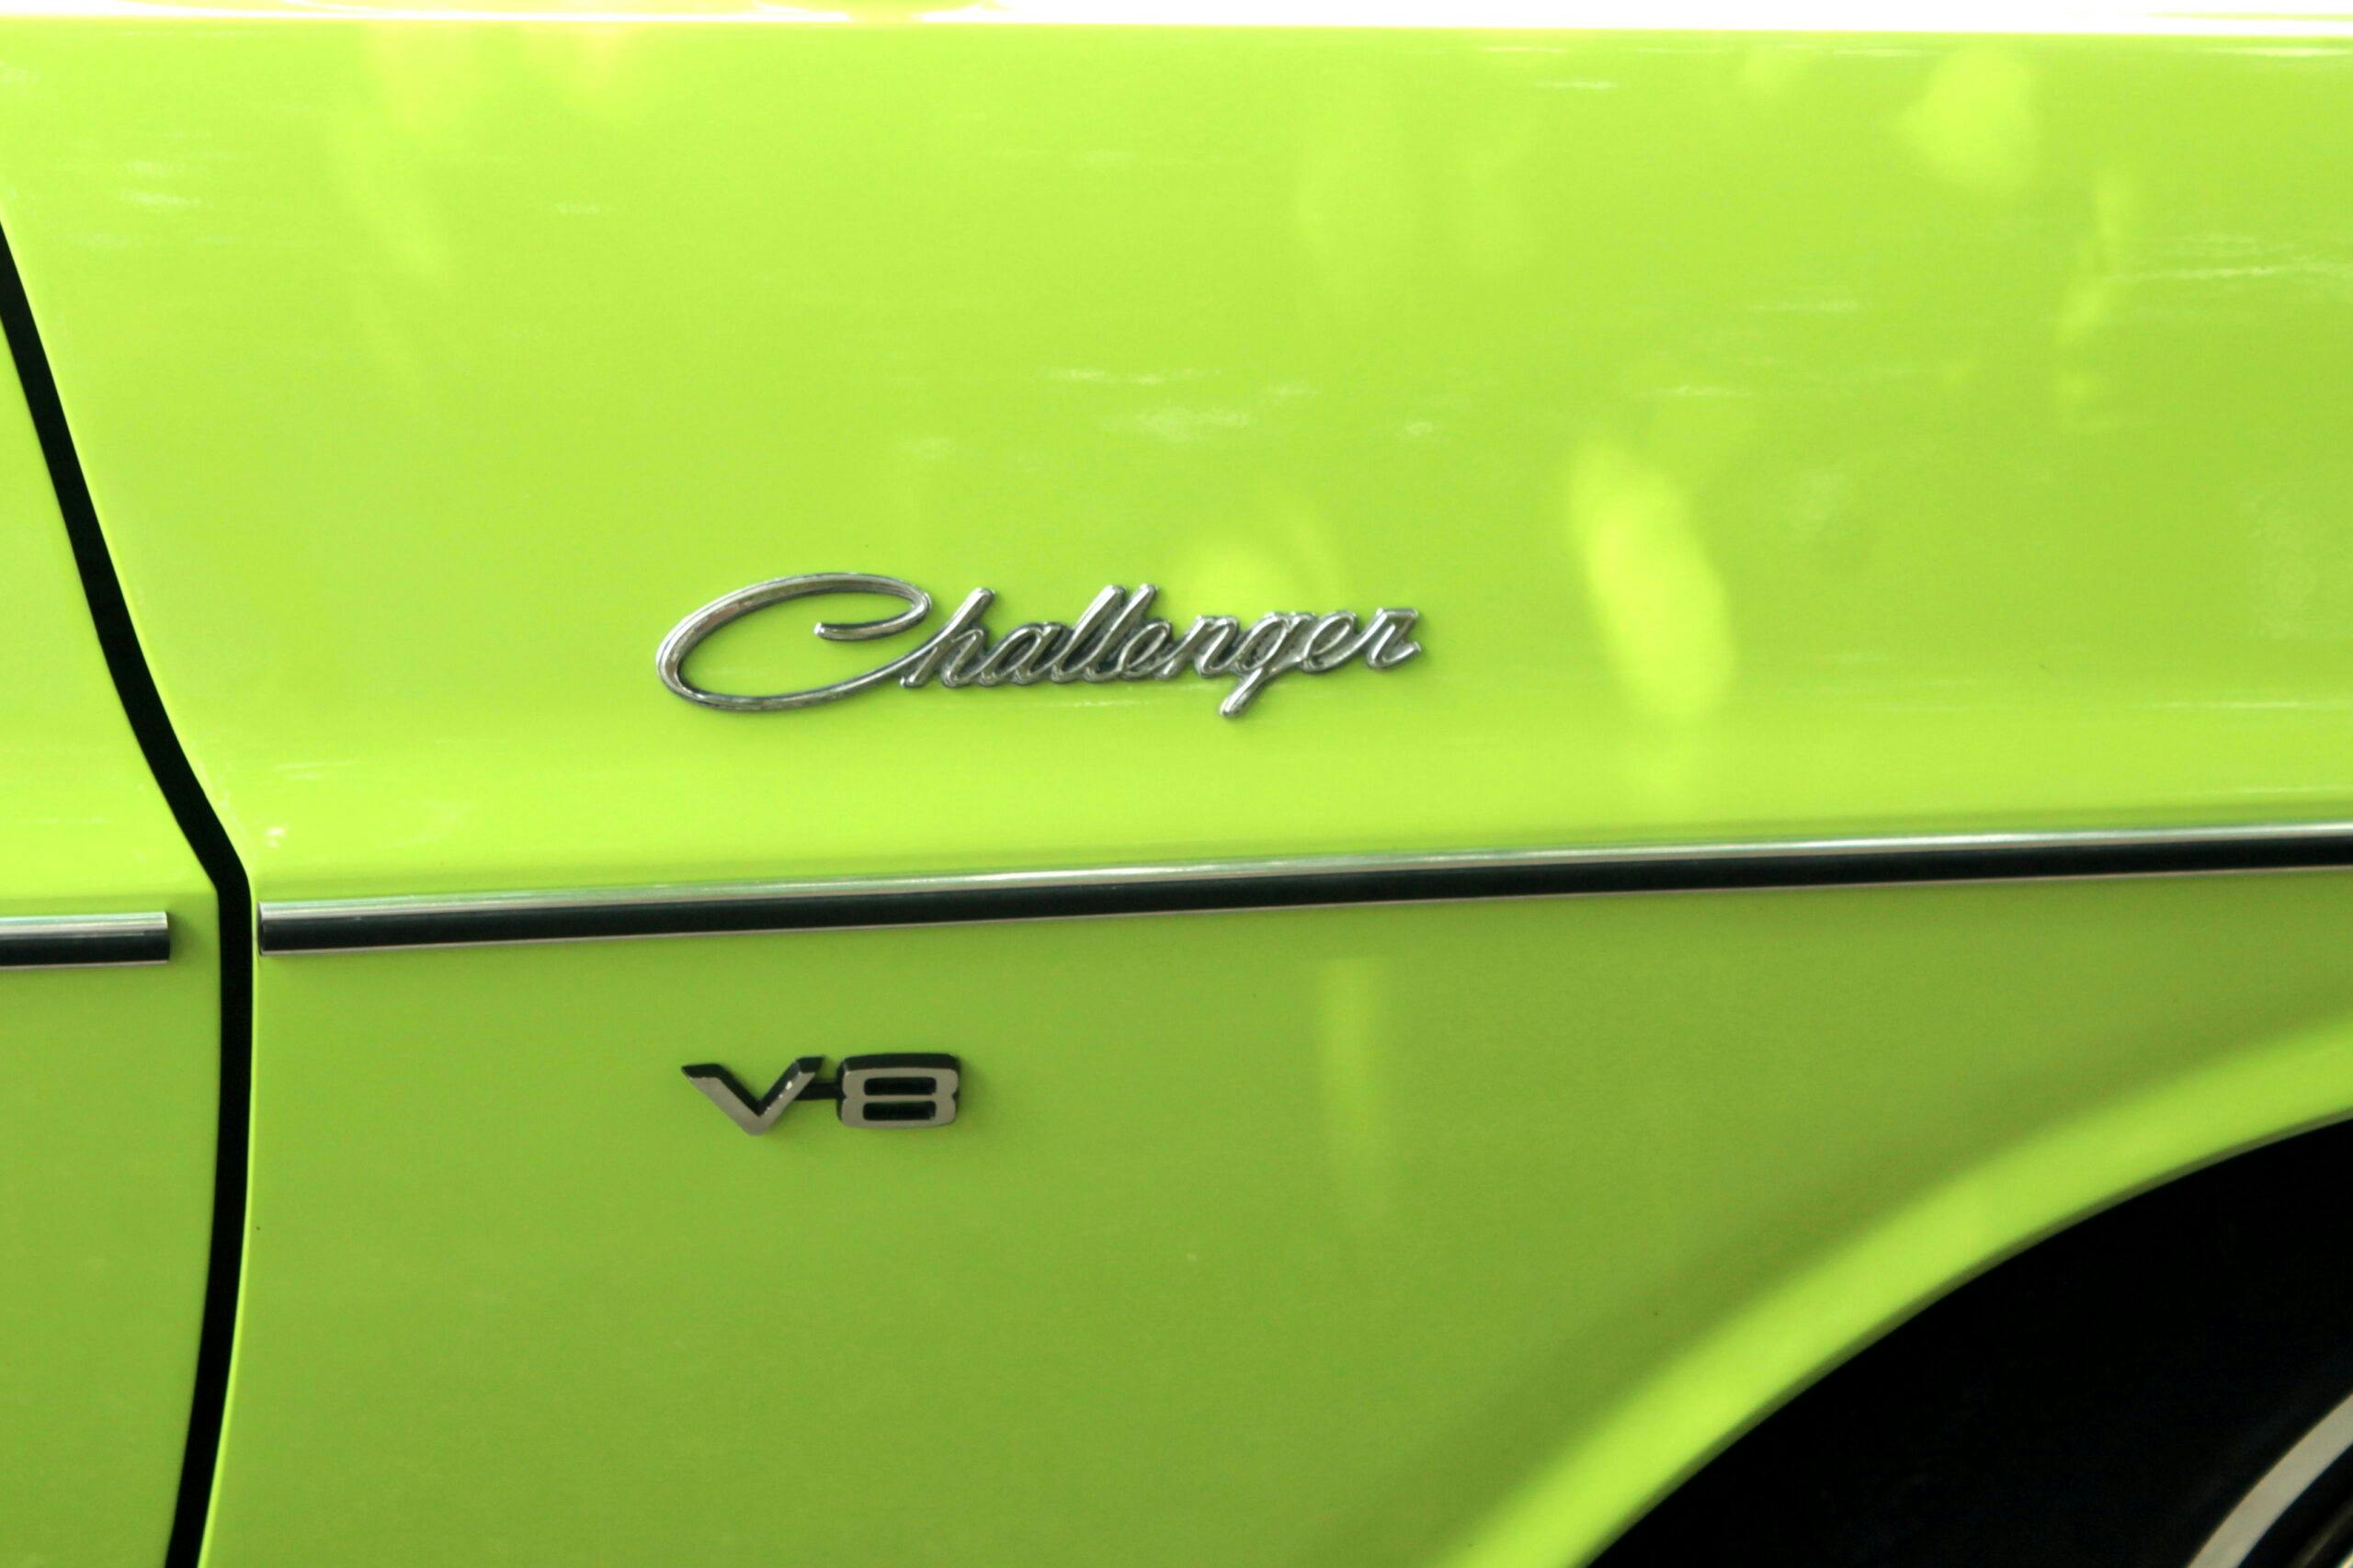 1970 Dodge Challenger high impact sublime badges closeup